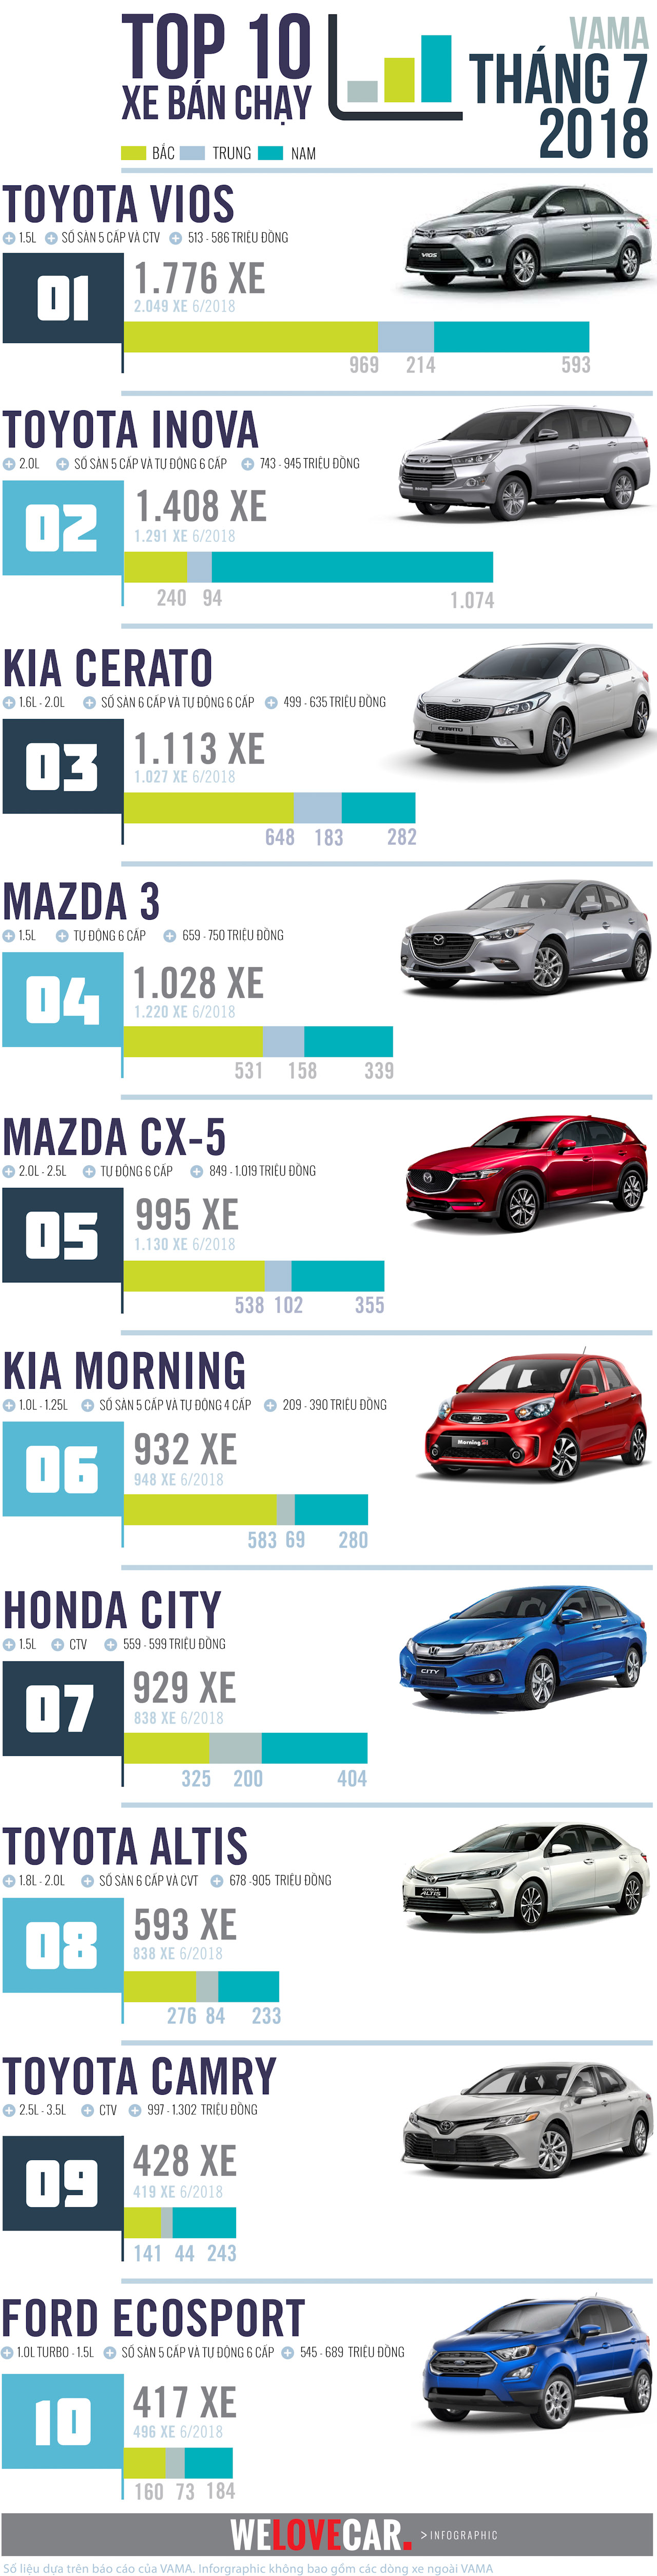 Top 10 mẫu xe bán chạy nhất trong tháng 7-2018-4